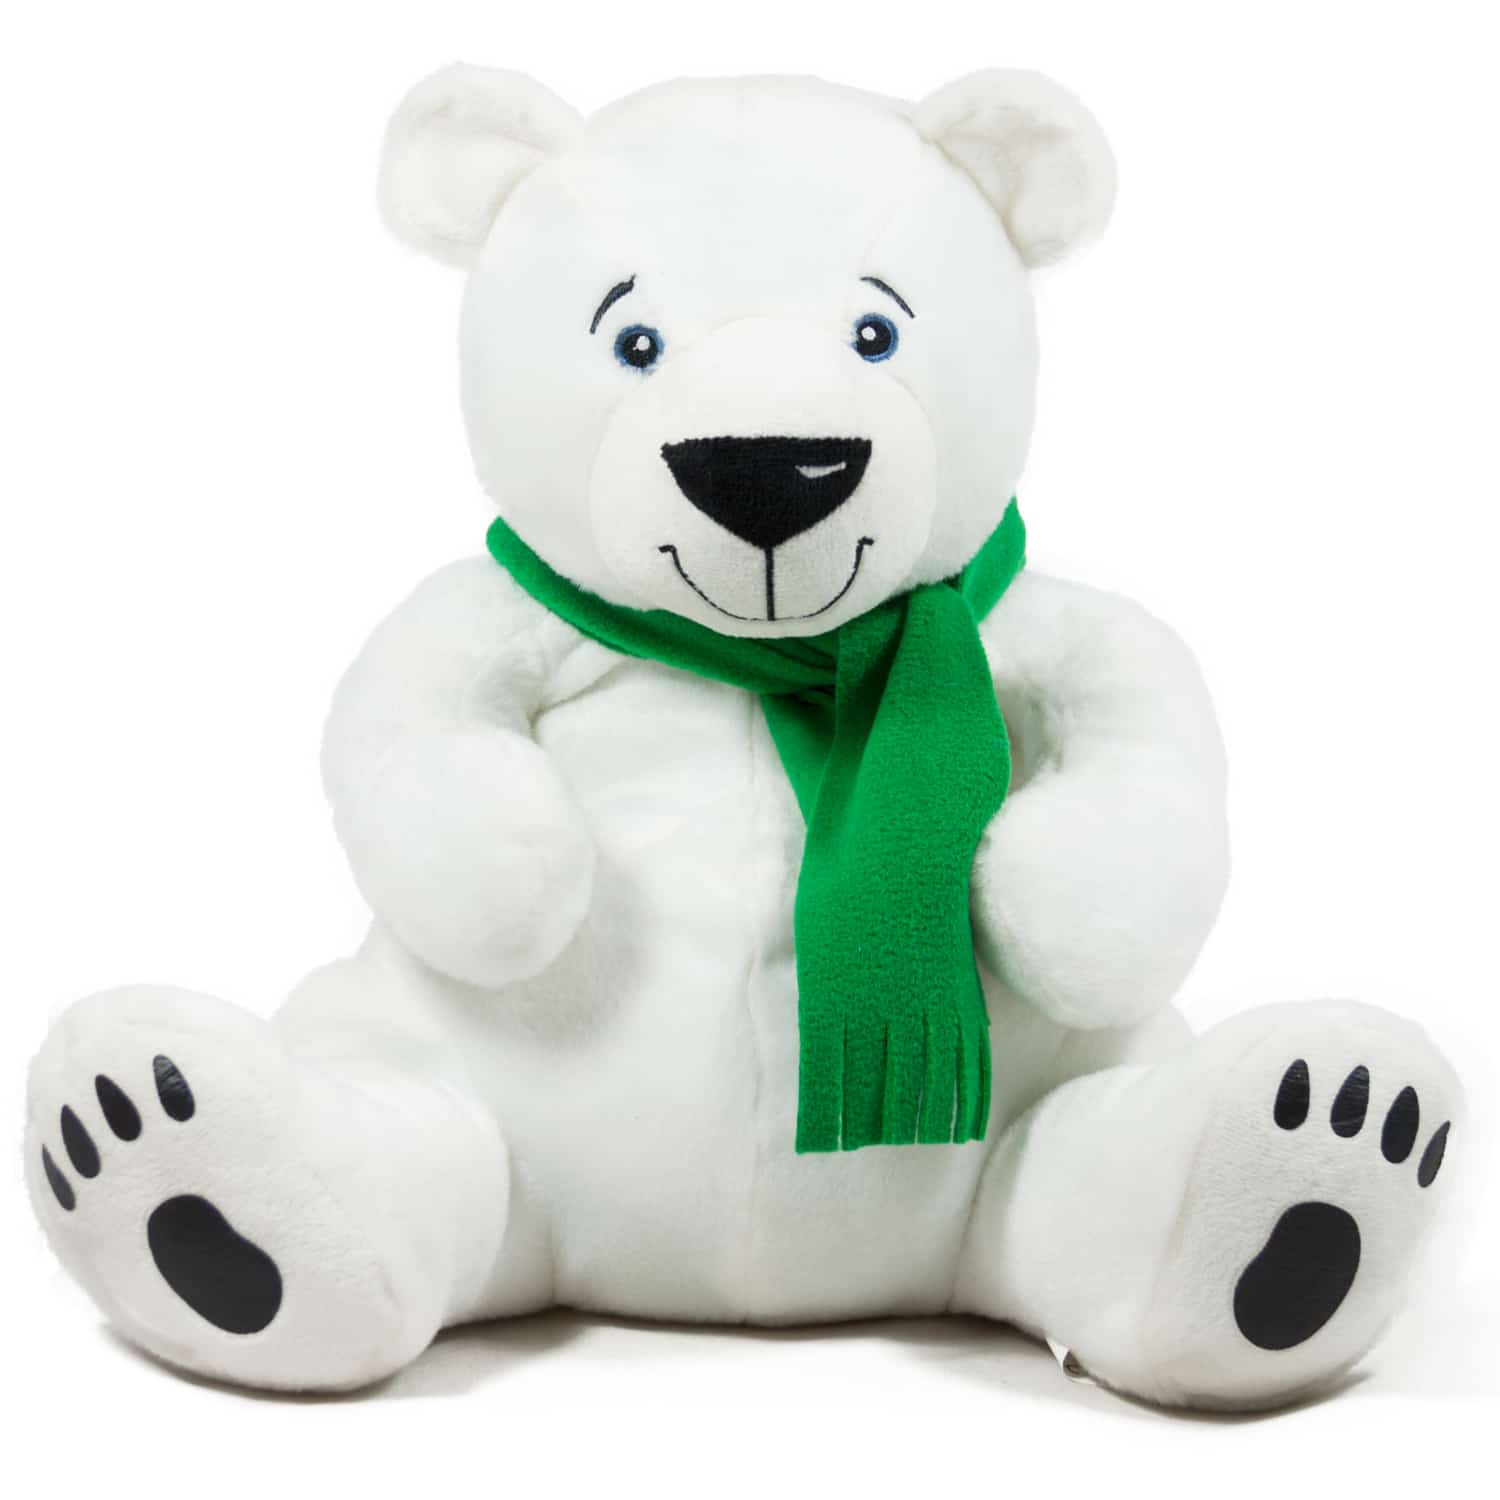 Polar bear with scarf - Green